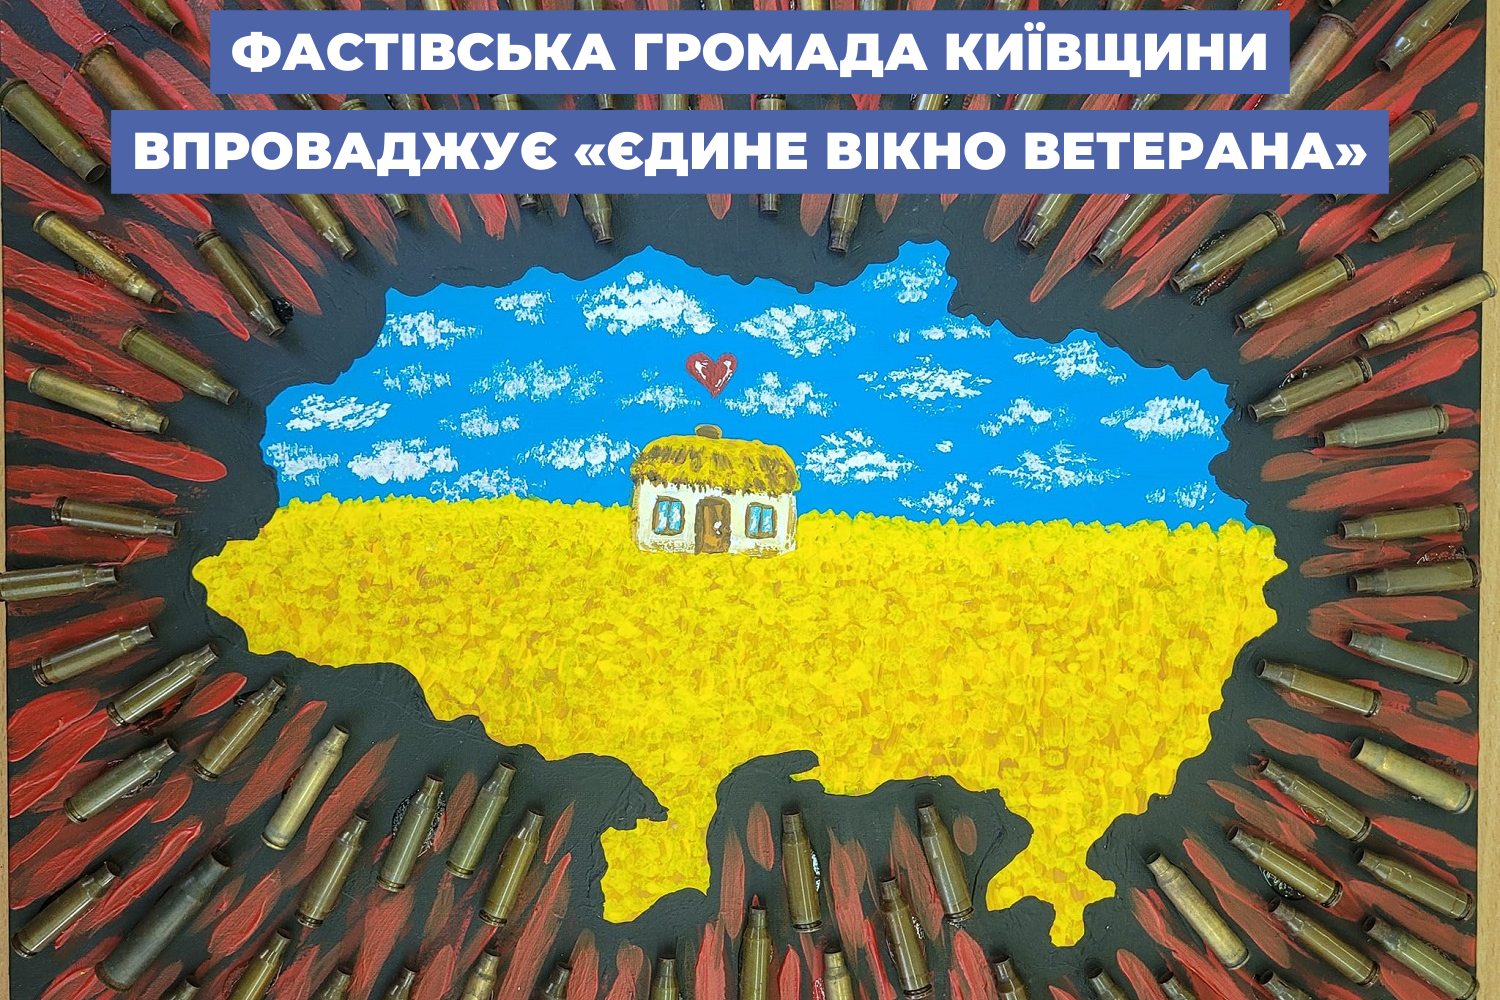 Фастівська громада Київщини впроваджує «Єдине вікно ветерана»